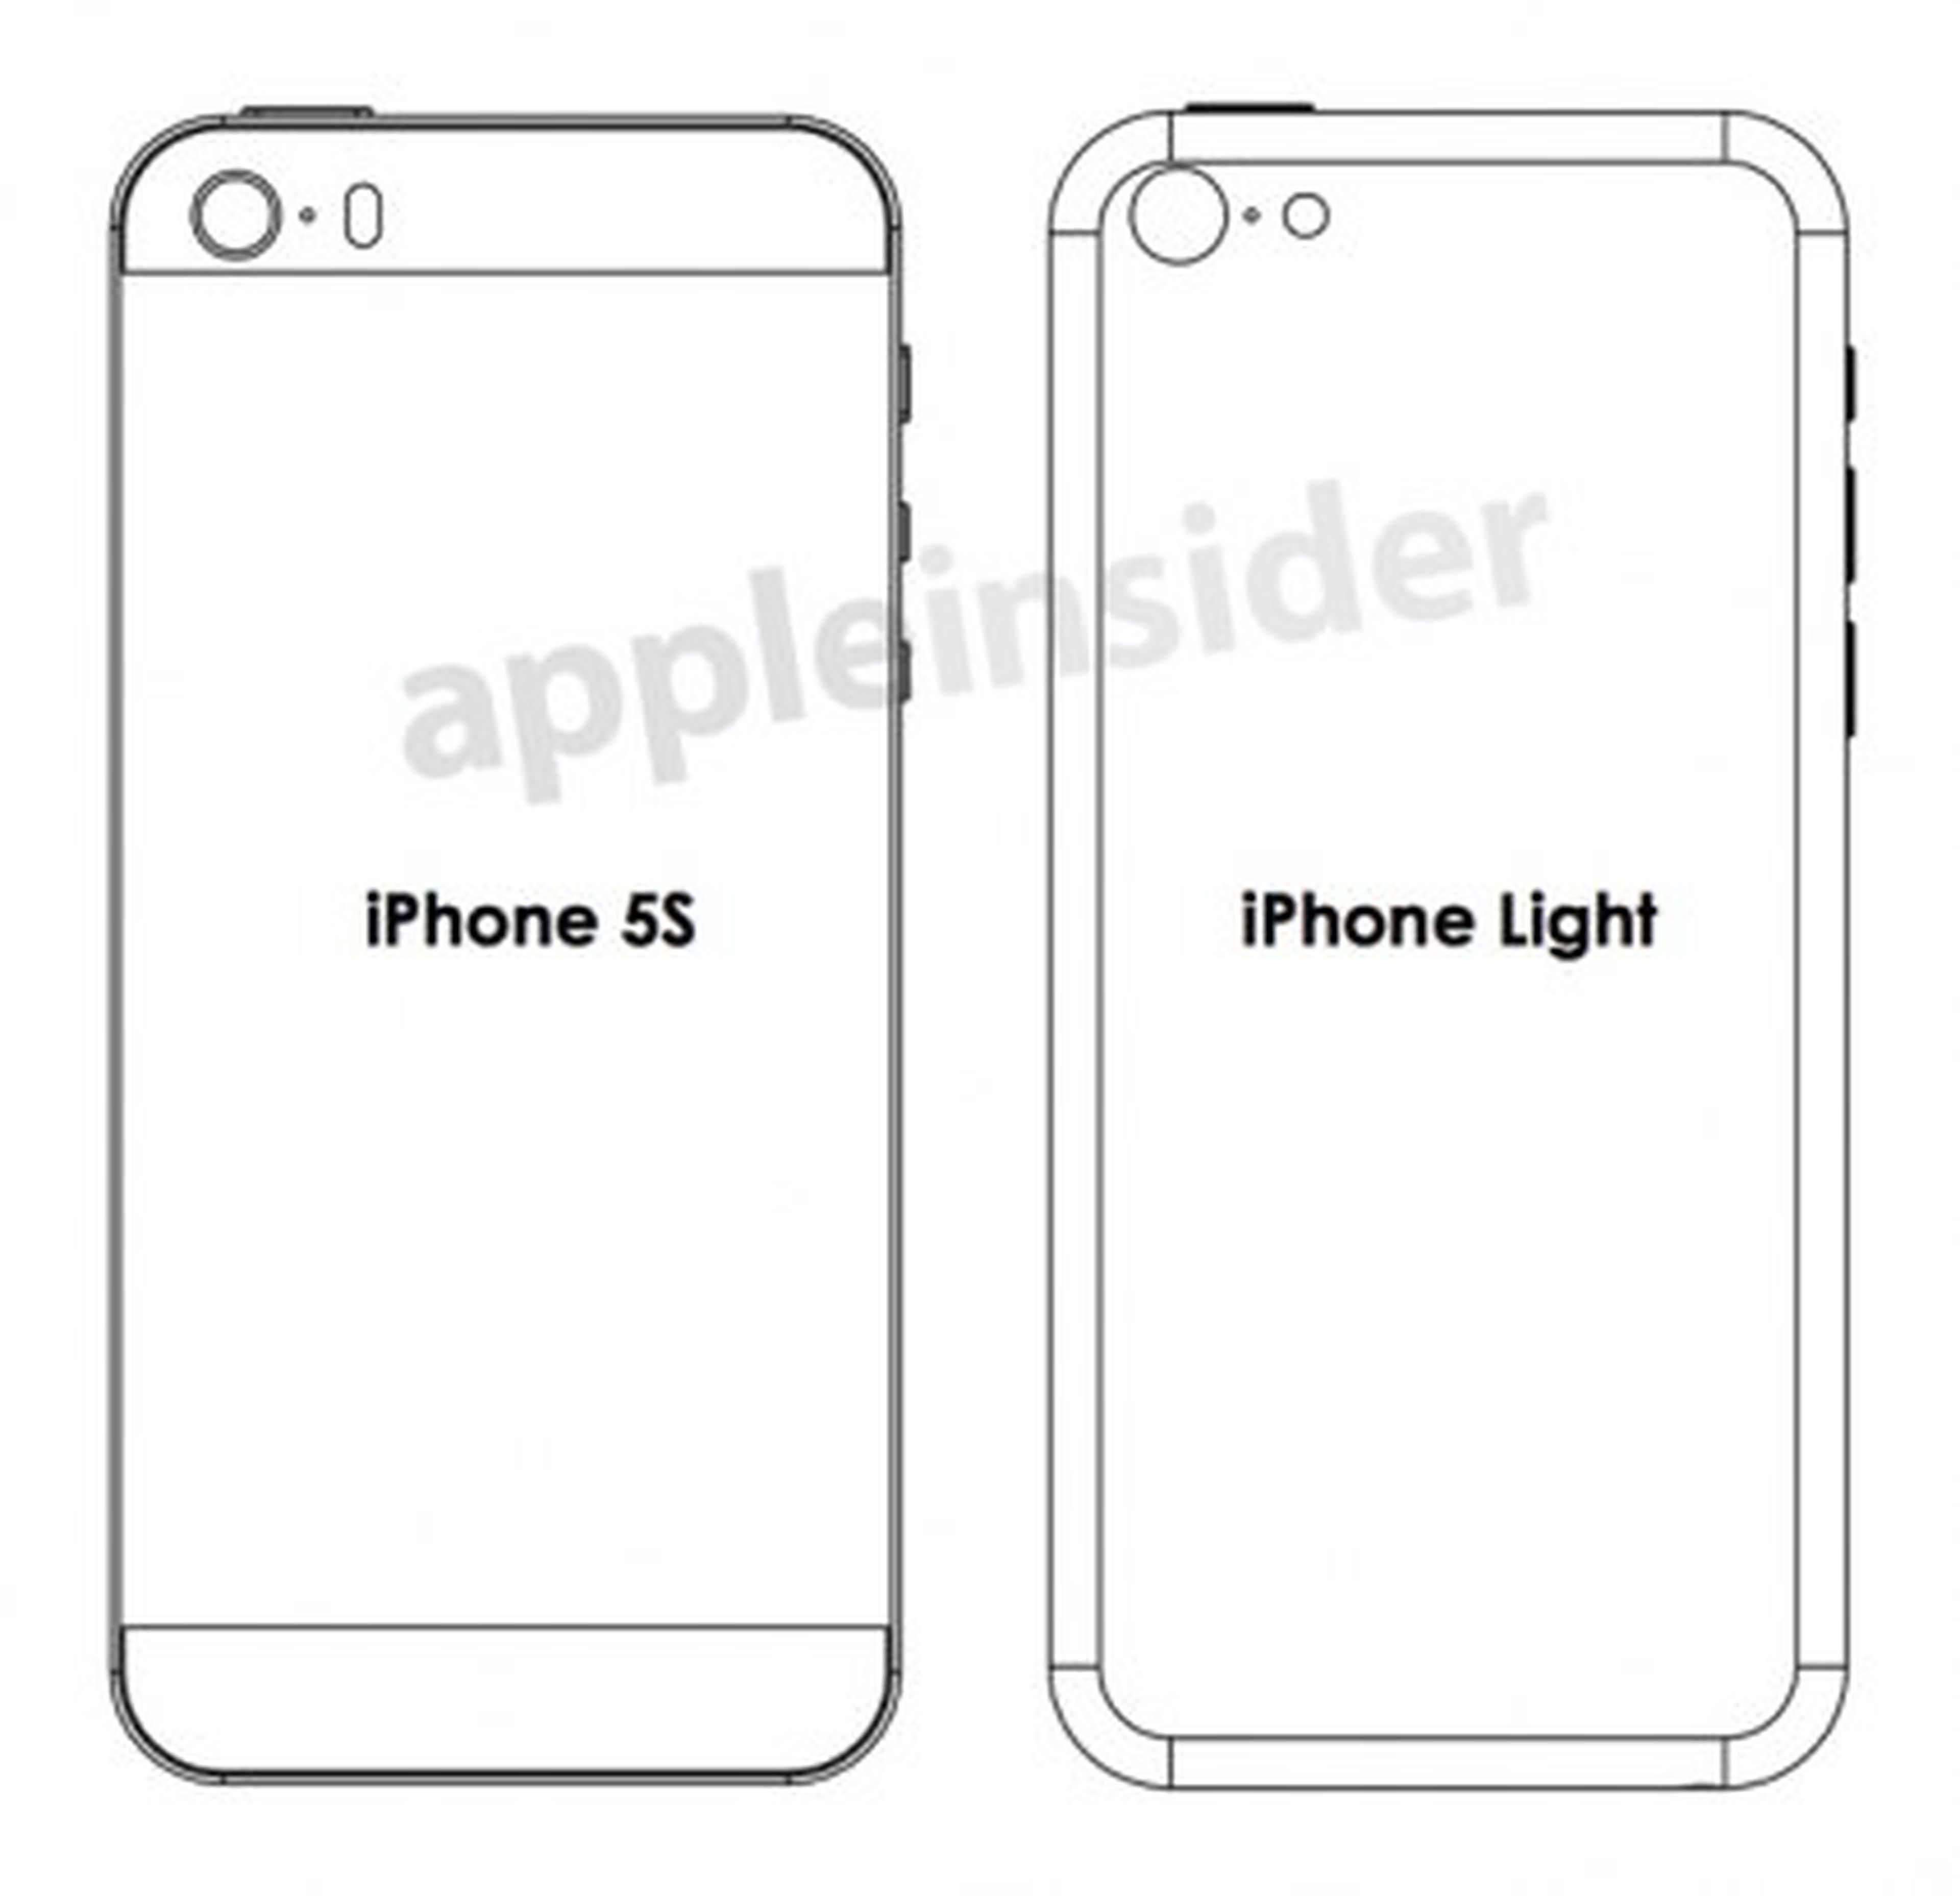 ¿Diseños y esquemas filtrados del iPhone 5S y iPhone Lite?